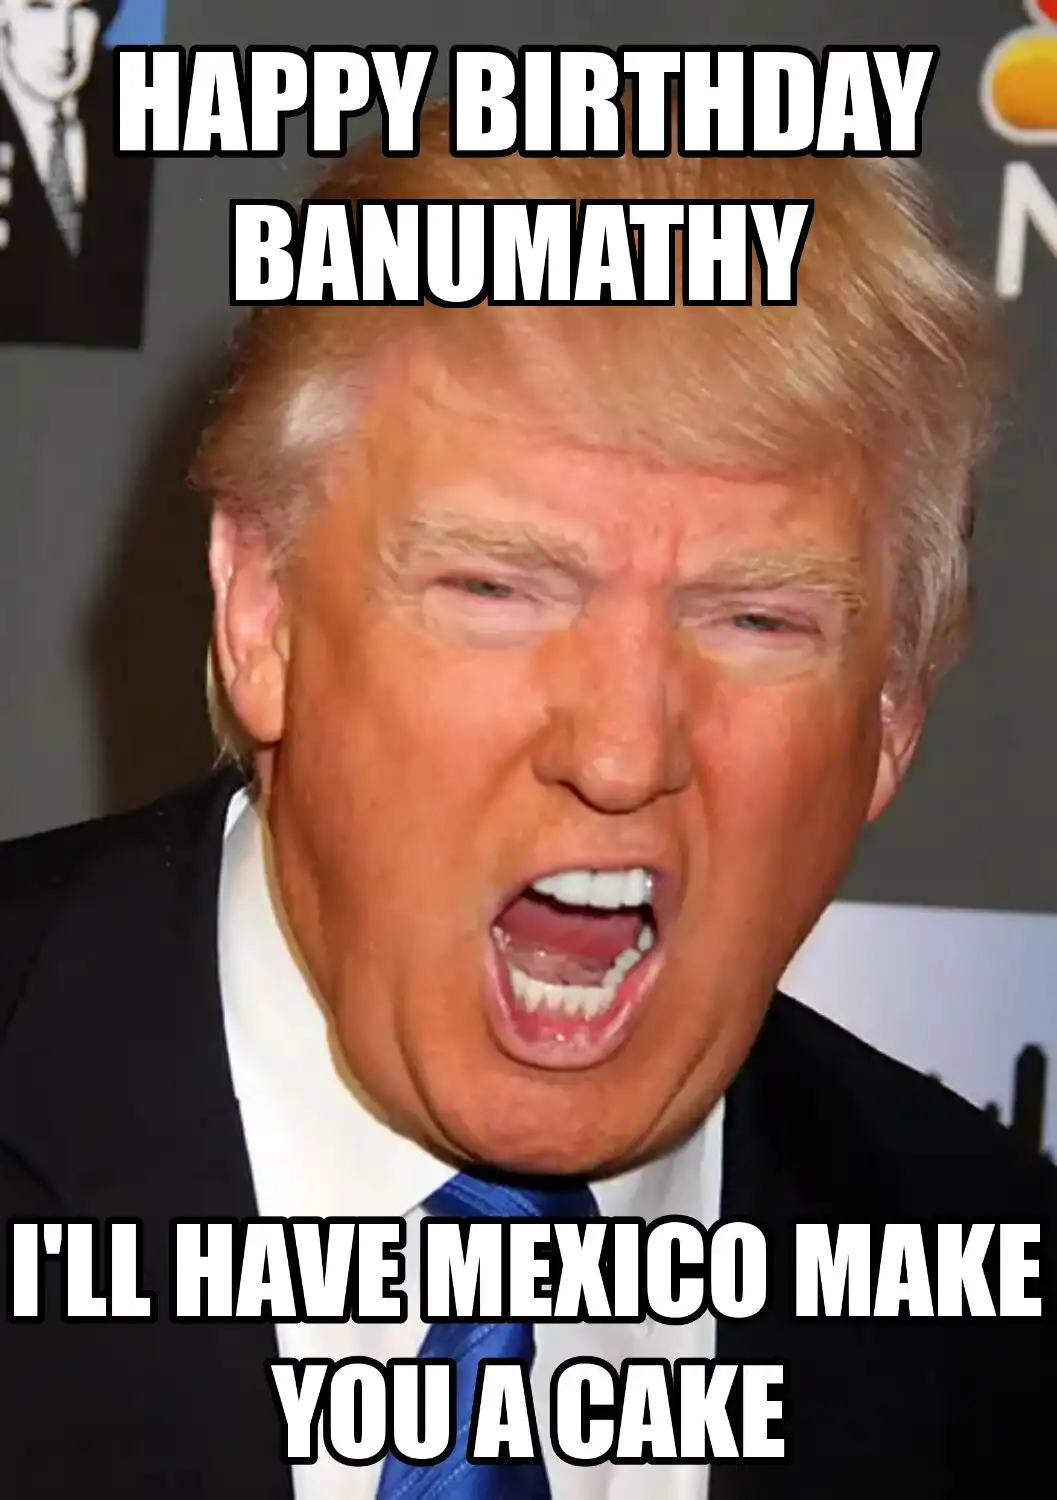 Happy Birthday Banumathy Mexico Make You A Cake Meme